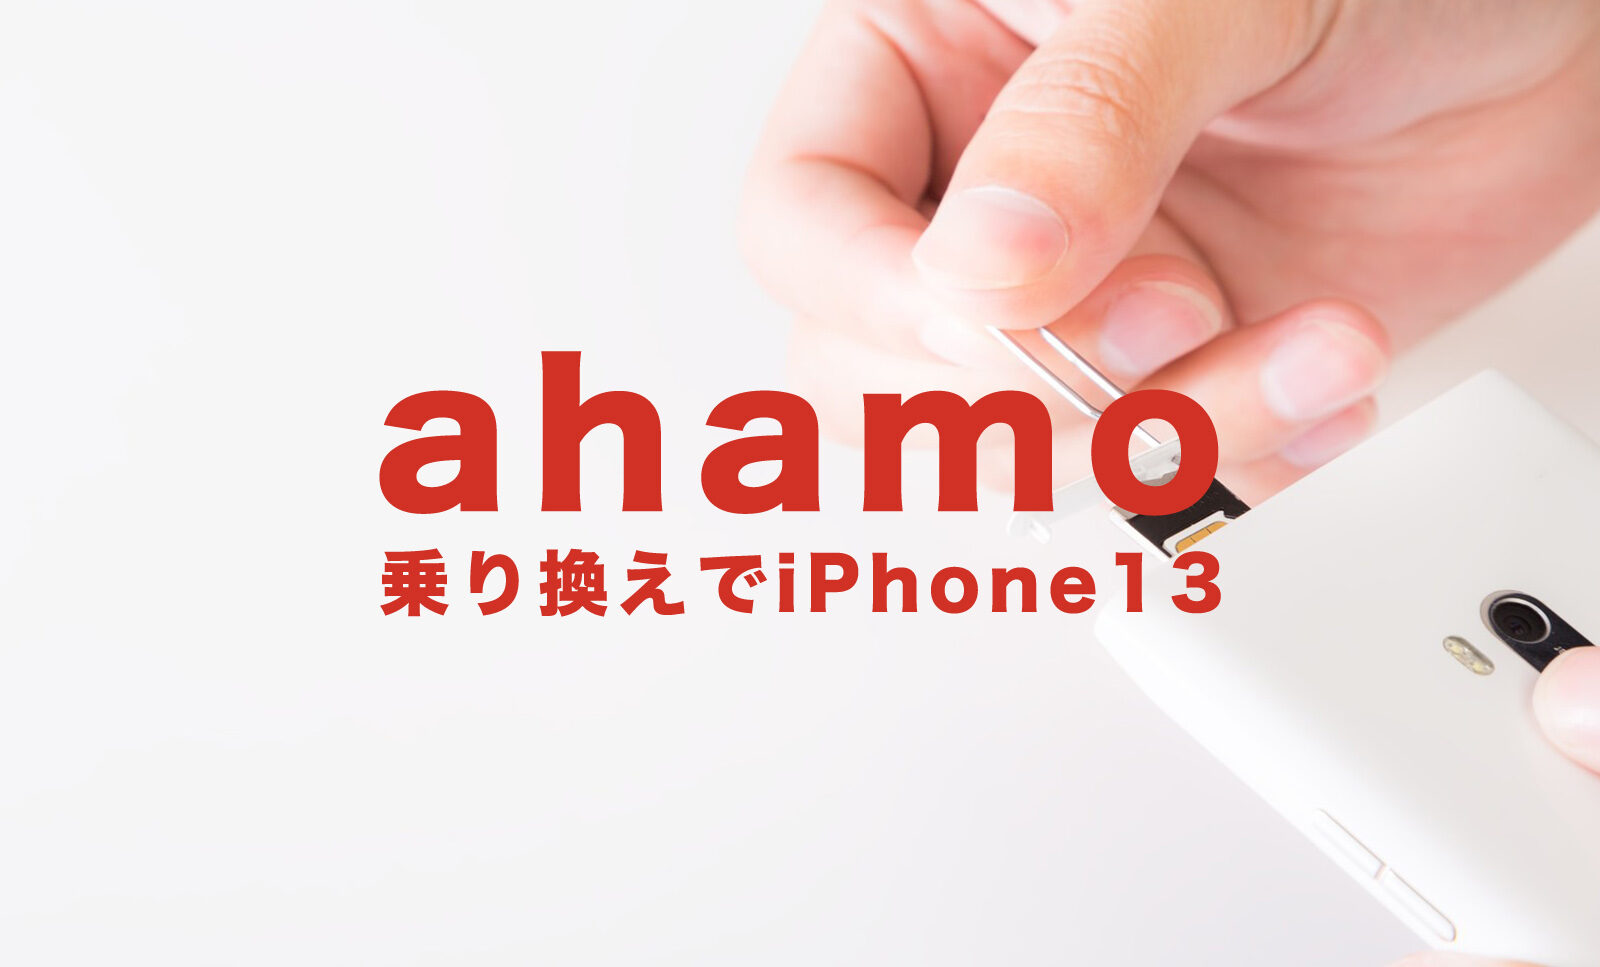 ahamo(アハモ)に乗り換えてiPhone13を使いたい場合のやり方を解説！のサムネイル画像